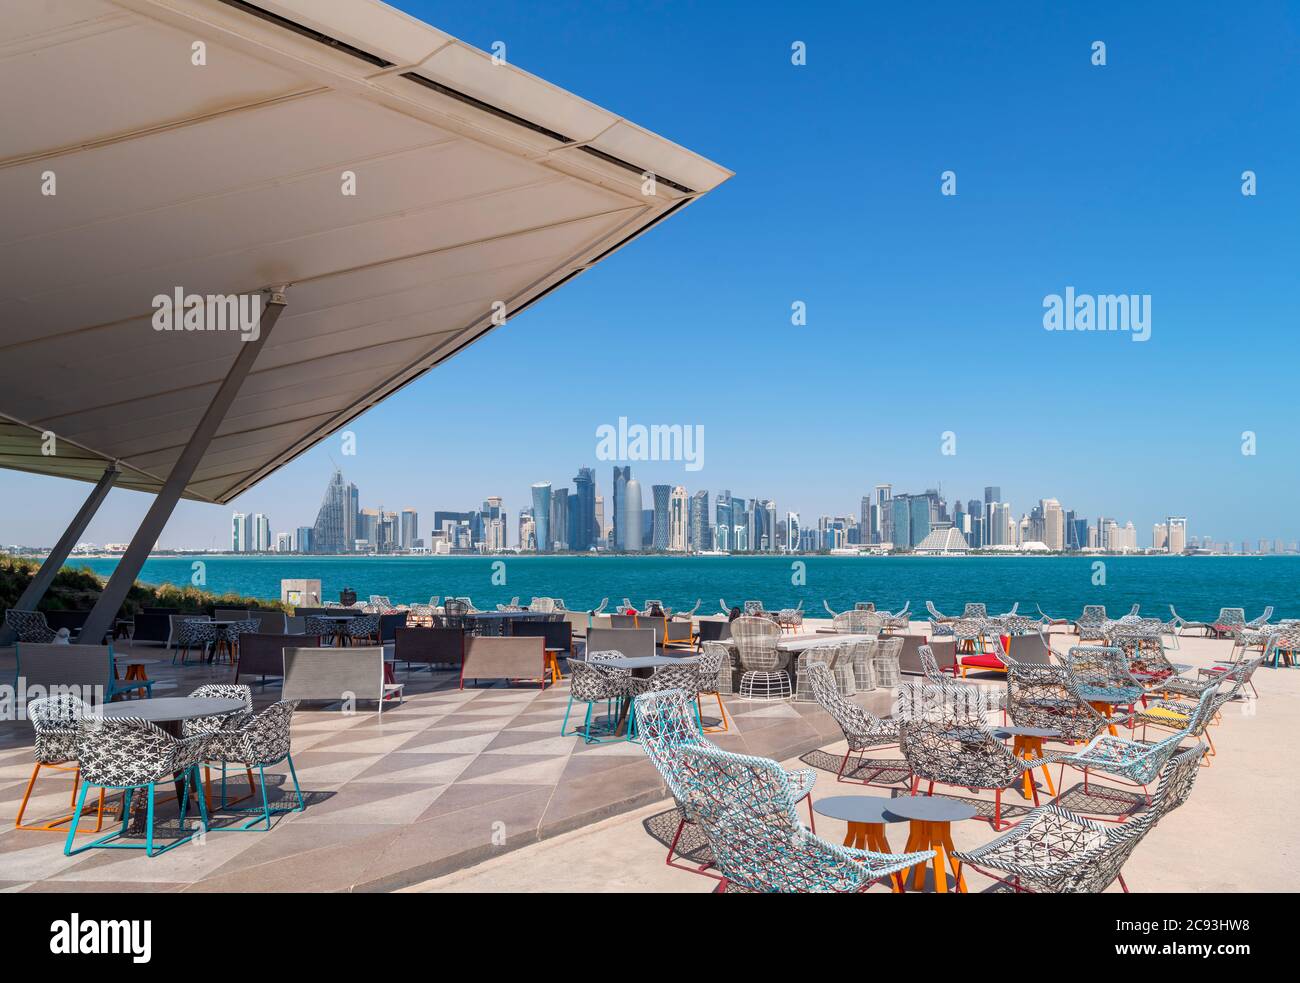 Das MIA Park Cafe im MIA Park mit der Skyline des West Bay Central Business District dahinter, Doha, Katar, Mittlerer Osten Stockfoto